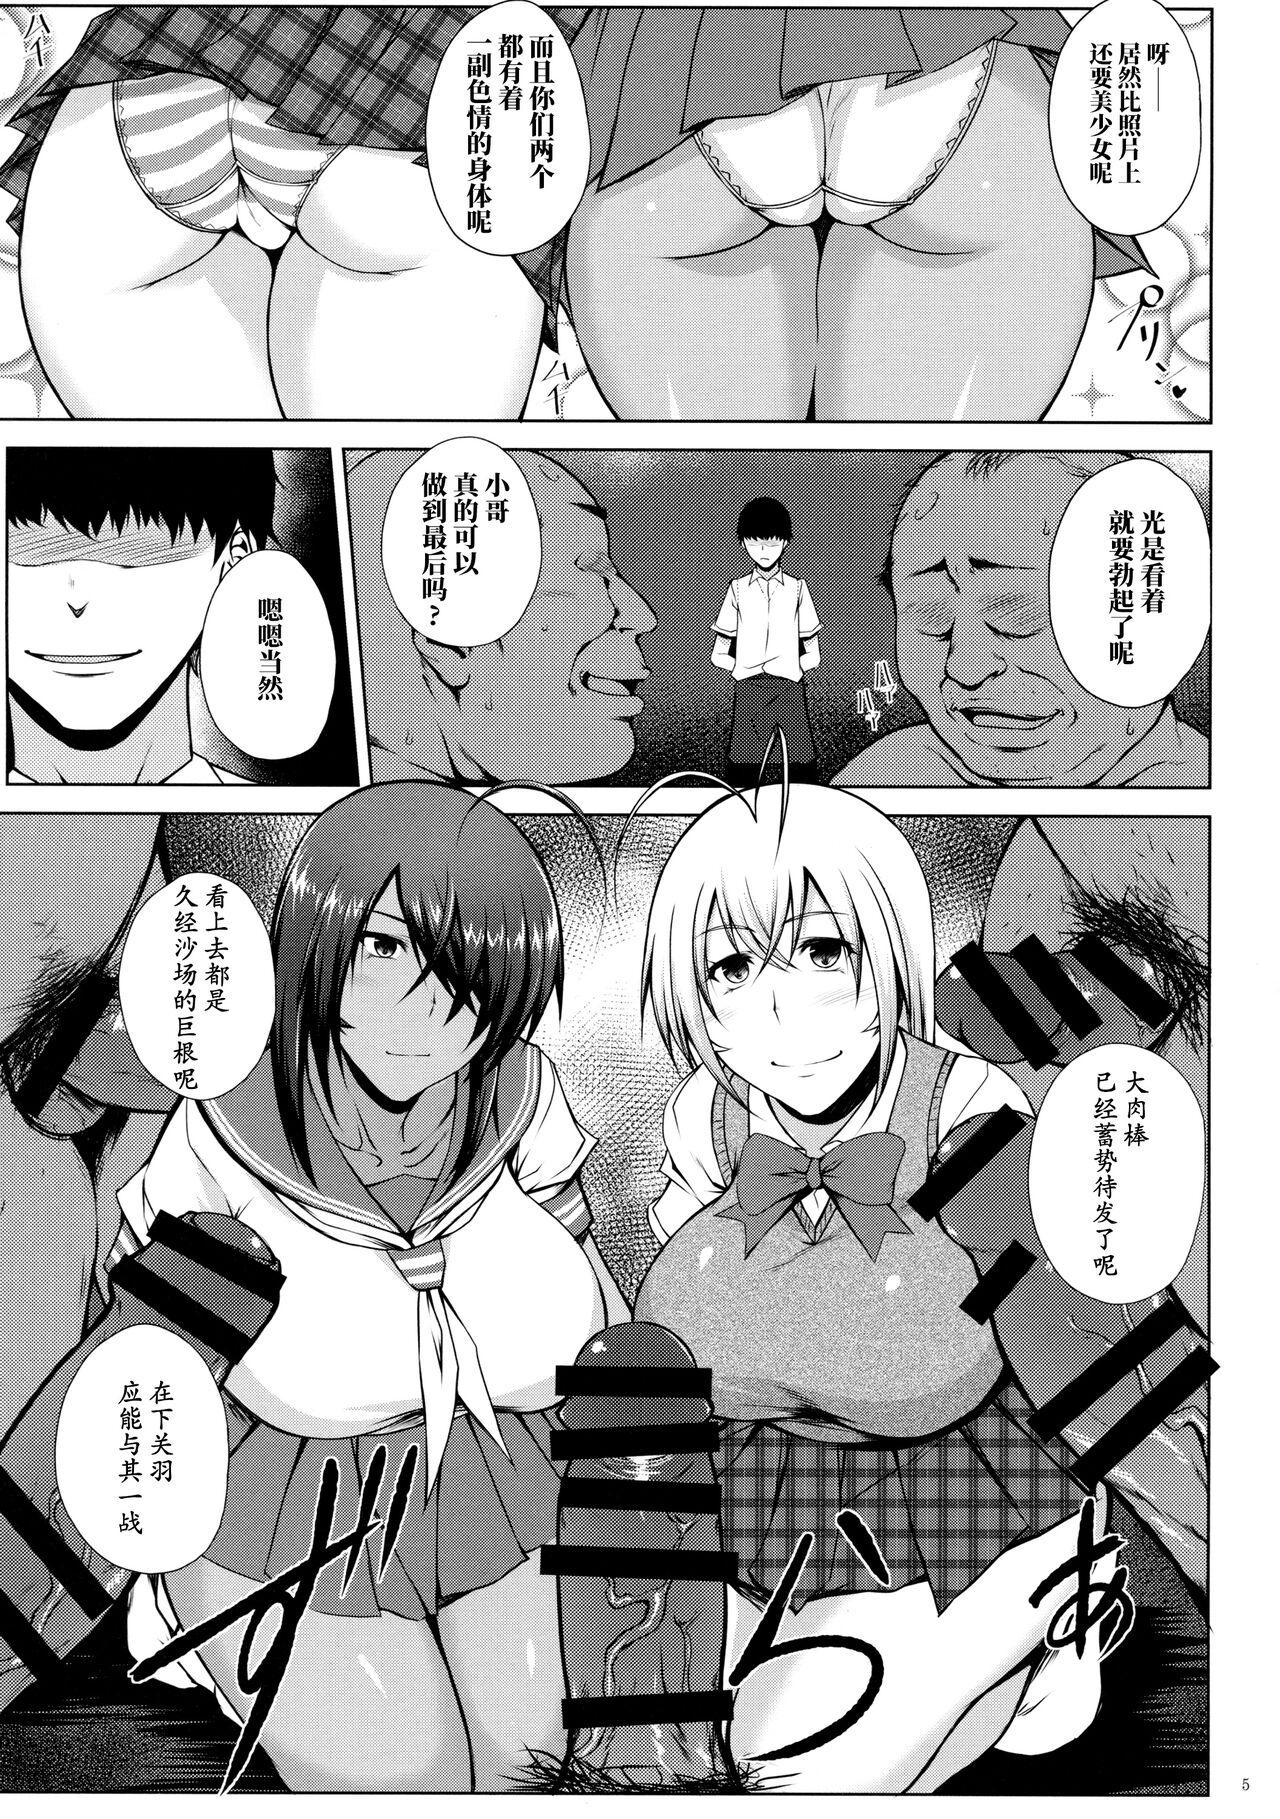 Banho Tousen no Utage - Ikkitousen | battle vixens Footfetish - Page 4